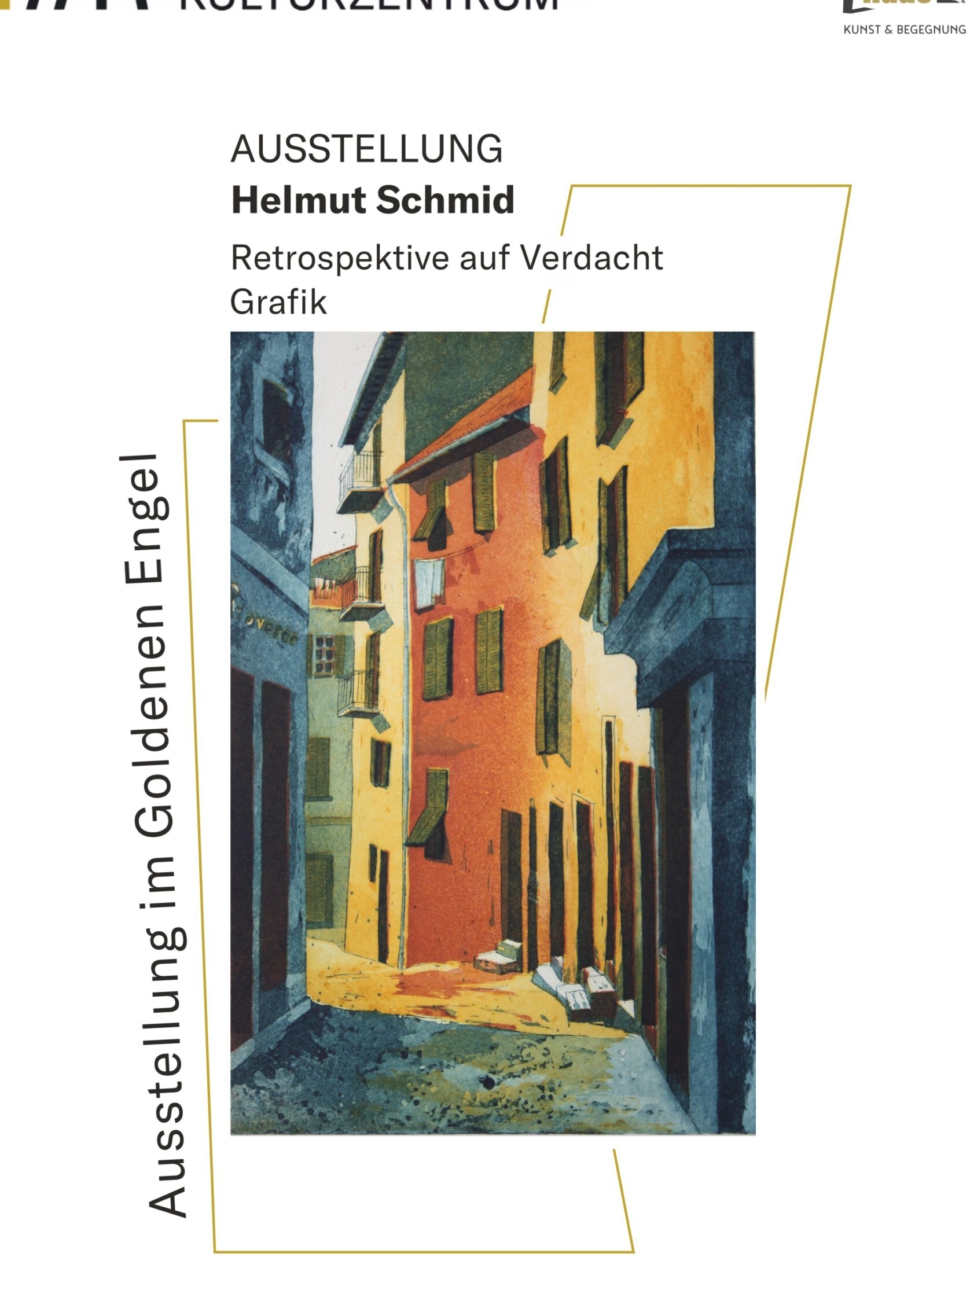 Titel Plakat Helmut Schmid 2021 fhd